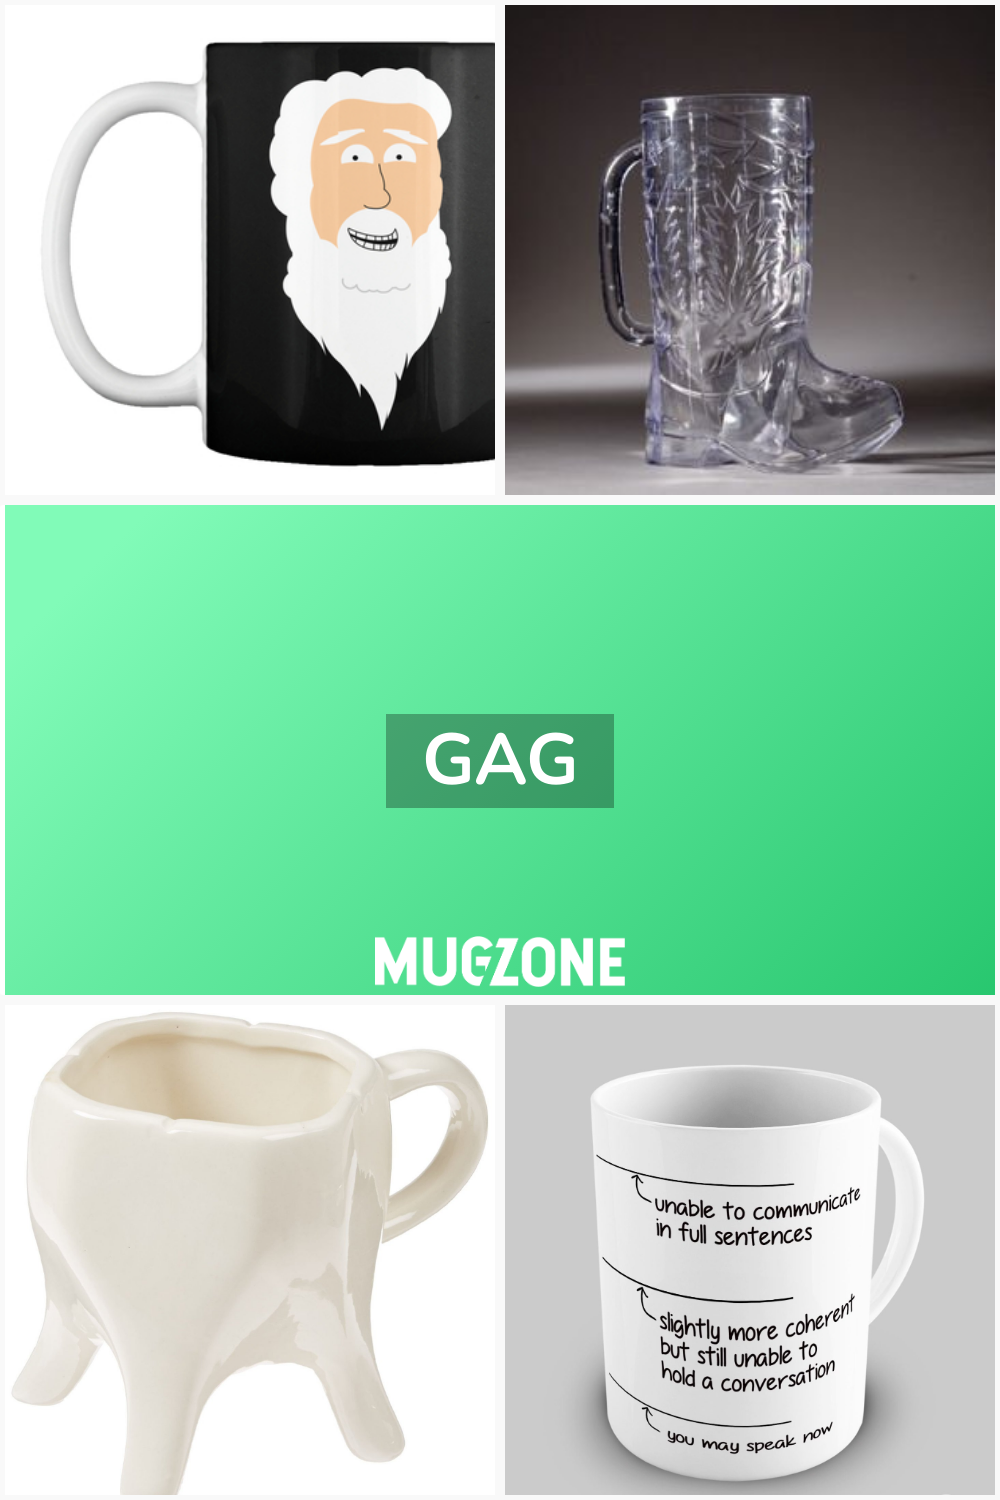 gag // Mug Zone